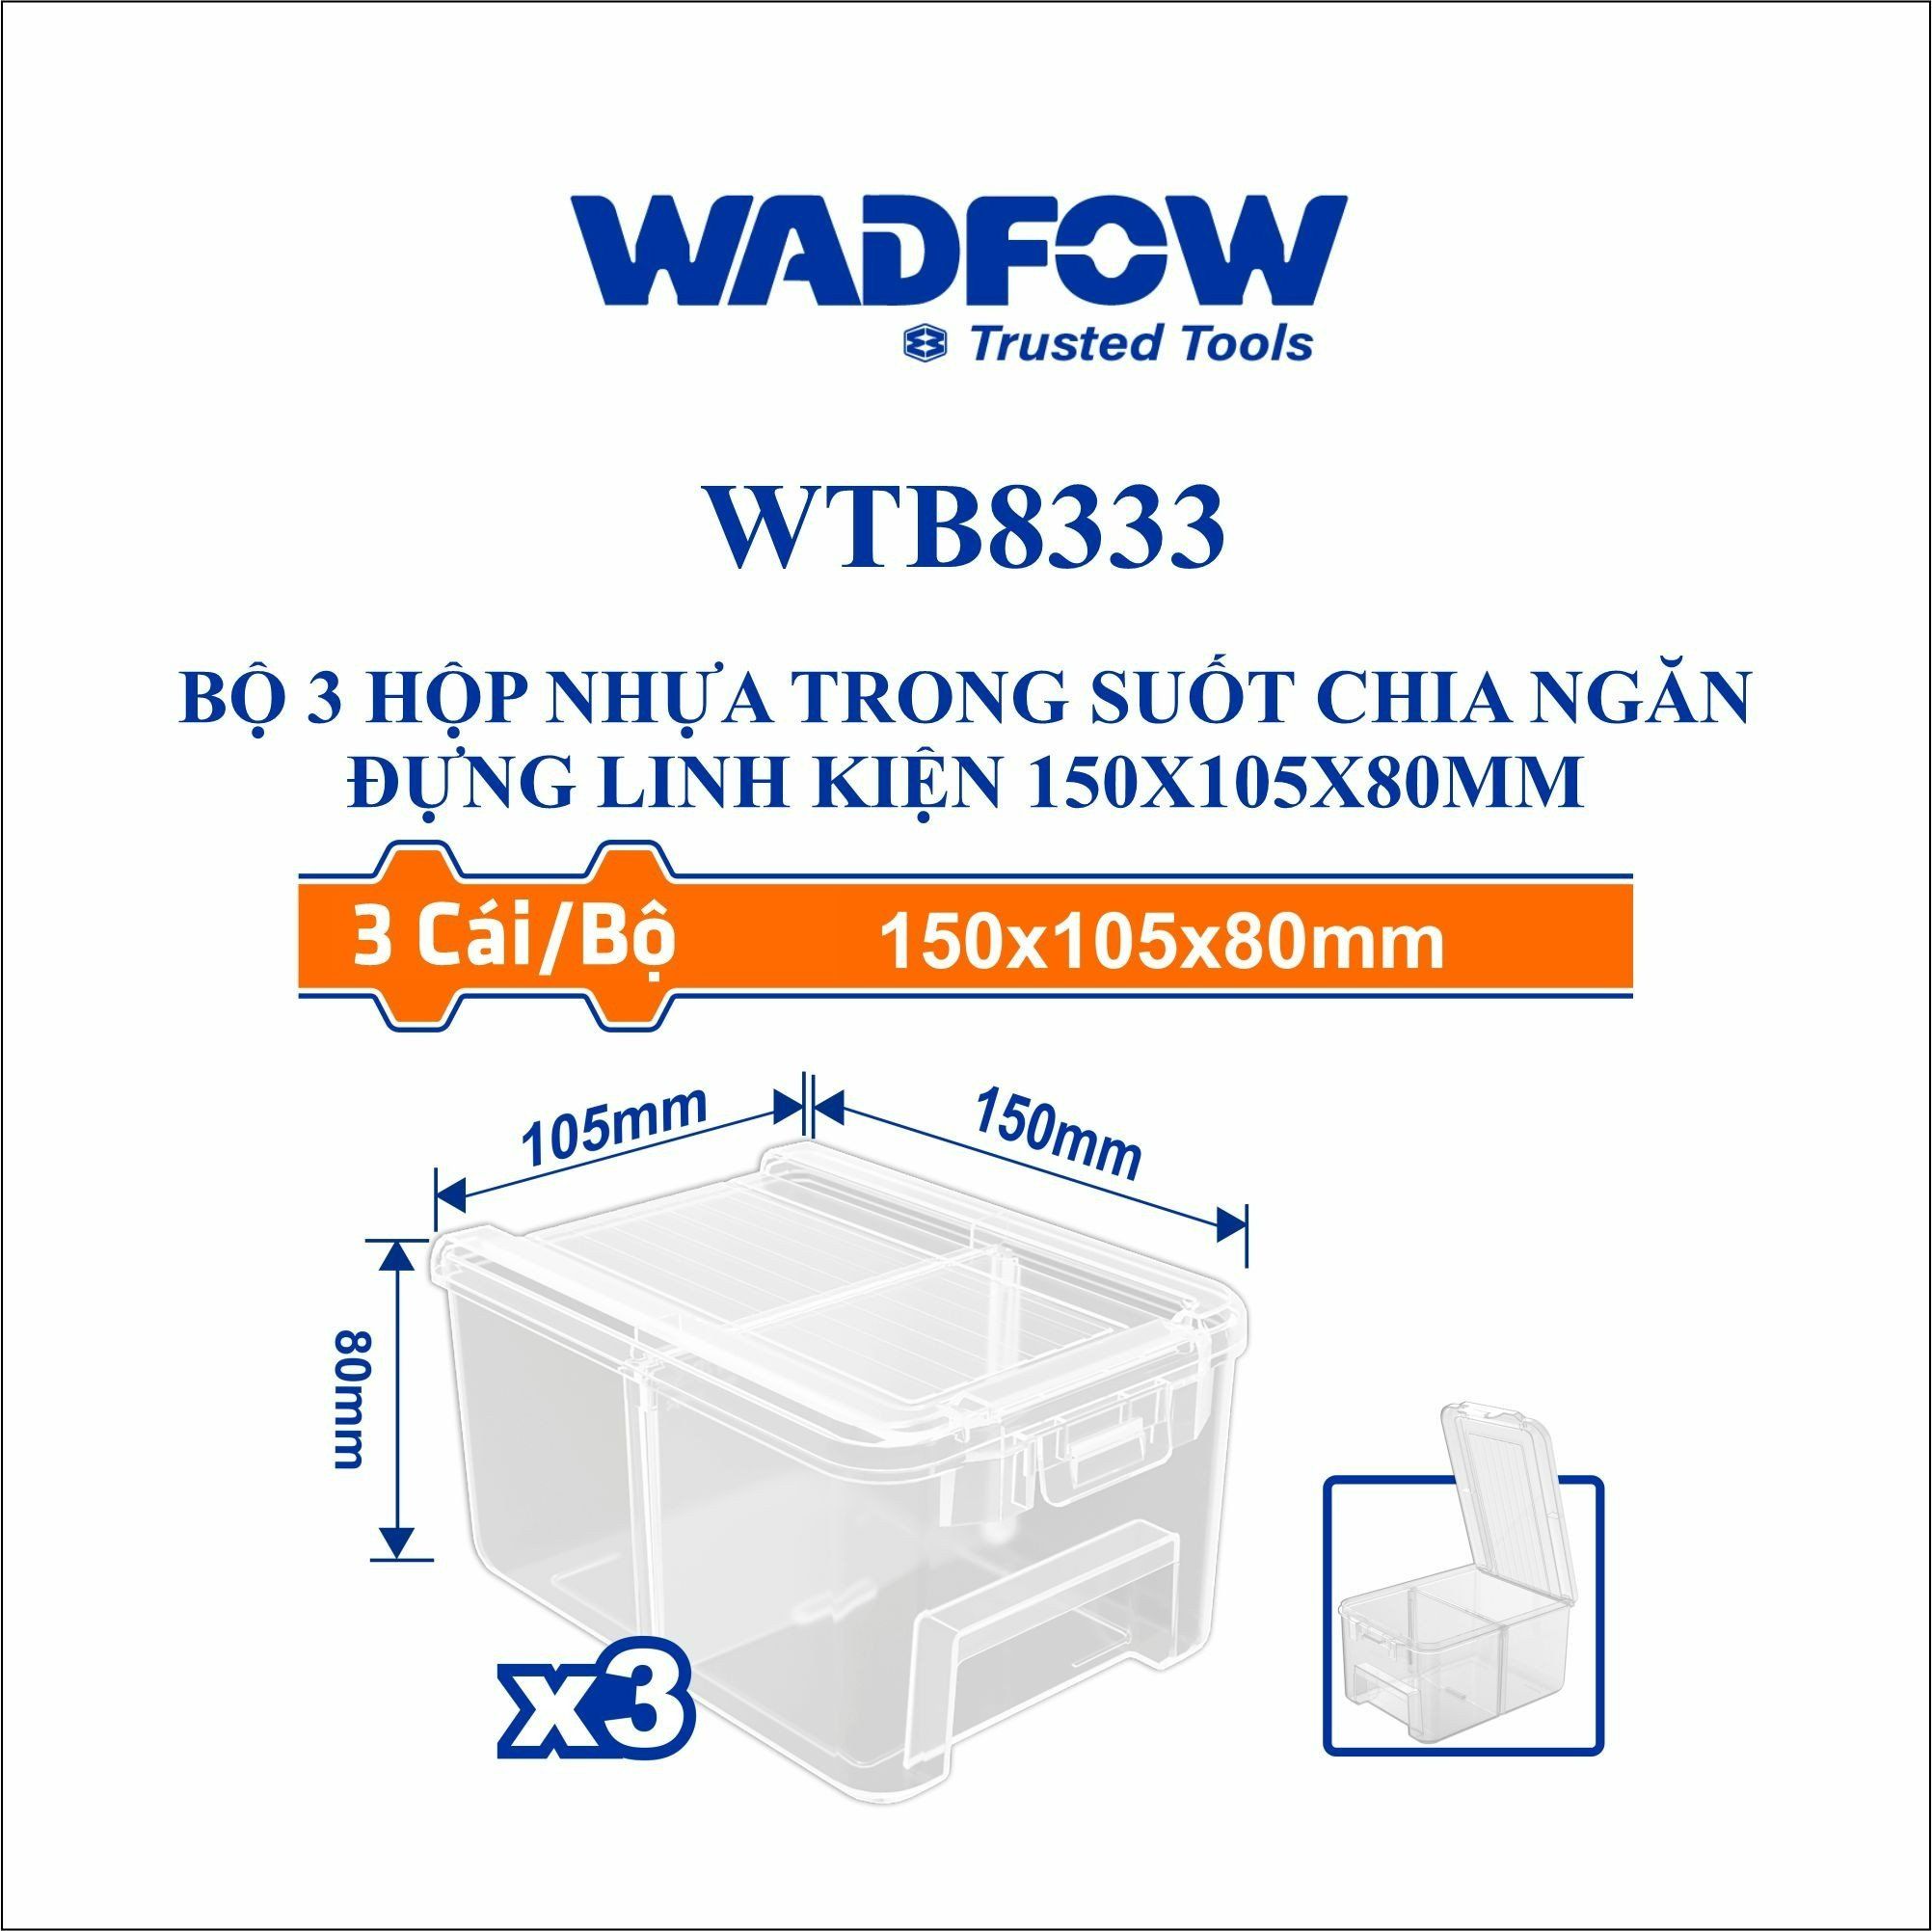  Bộ 3 Hộp nhựa trong suốt chia ngăn đựng linh kiện 150x105x80mm WADFOW WTB8333 